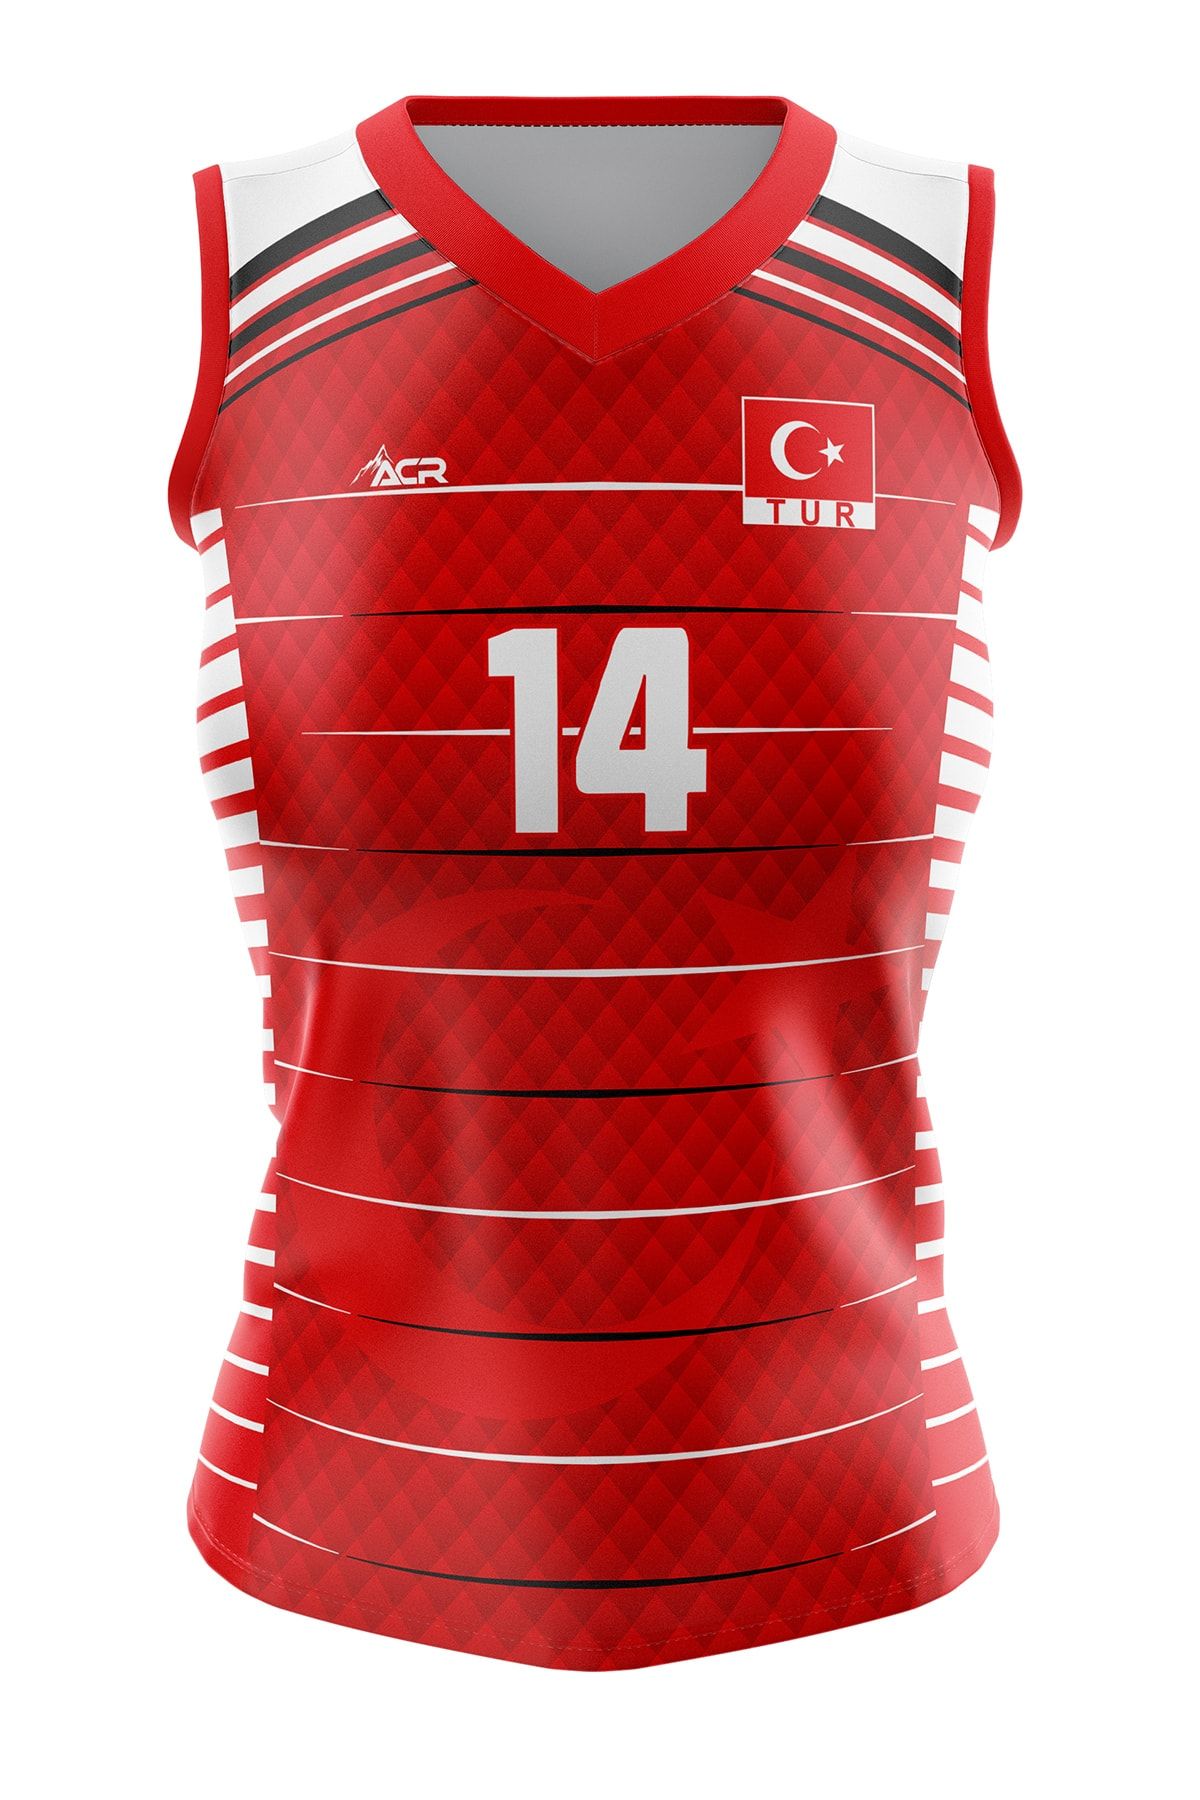 ACR Giyim Tekstil Forma Baskı Voleybol Forması Türkiye Model Dijital Baskı Kişiye Özel Tasarım Tek Üst